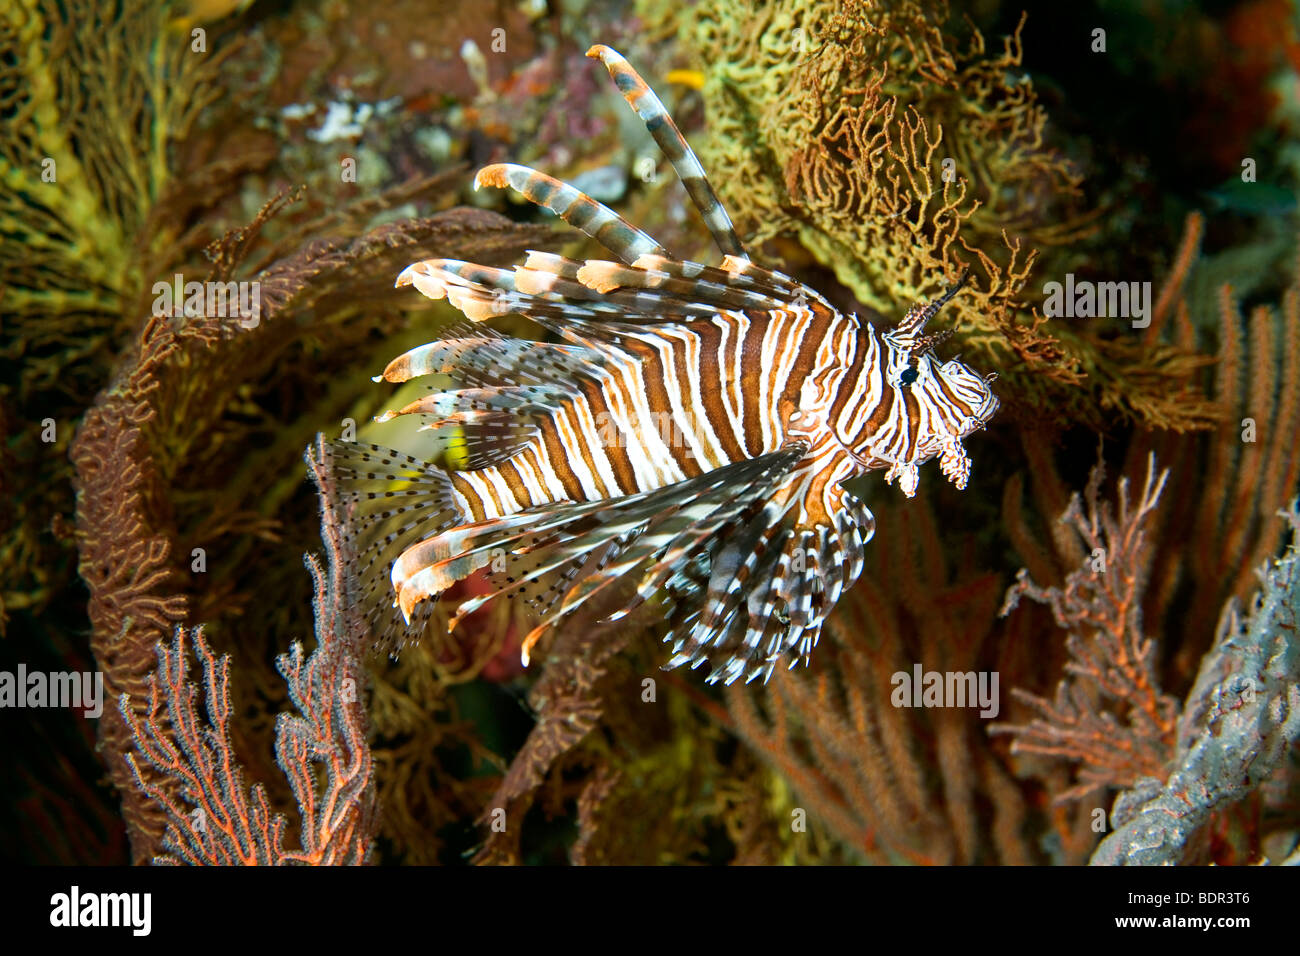 Eine schöne Rotfeuerfisch unter Weichkorallen und Gorgonien, unter Wasser schwimmen. Diese Fische haben giftige dorsale Stacheln. Stockfoto